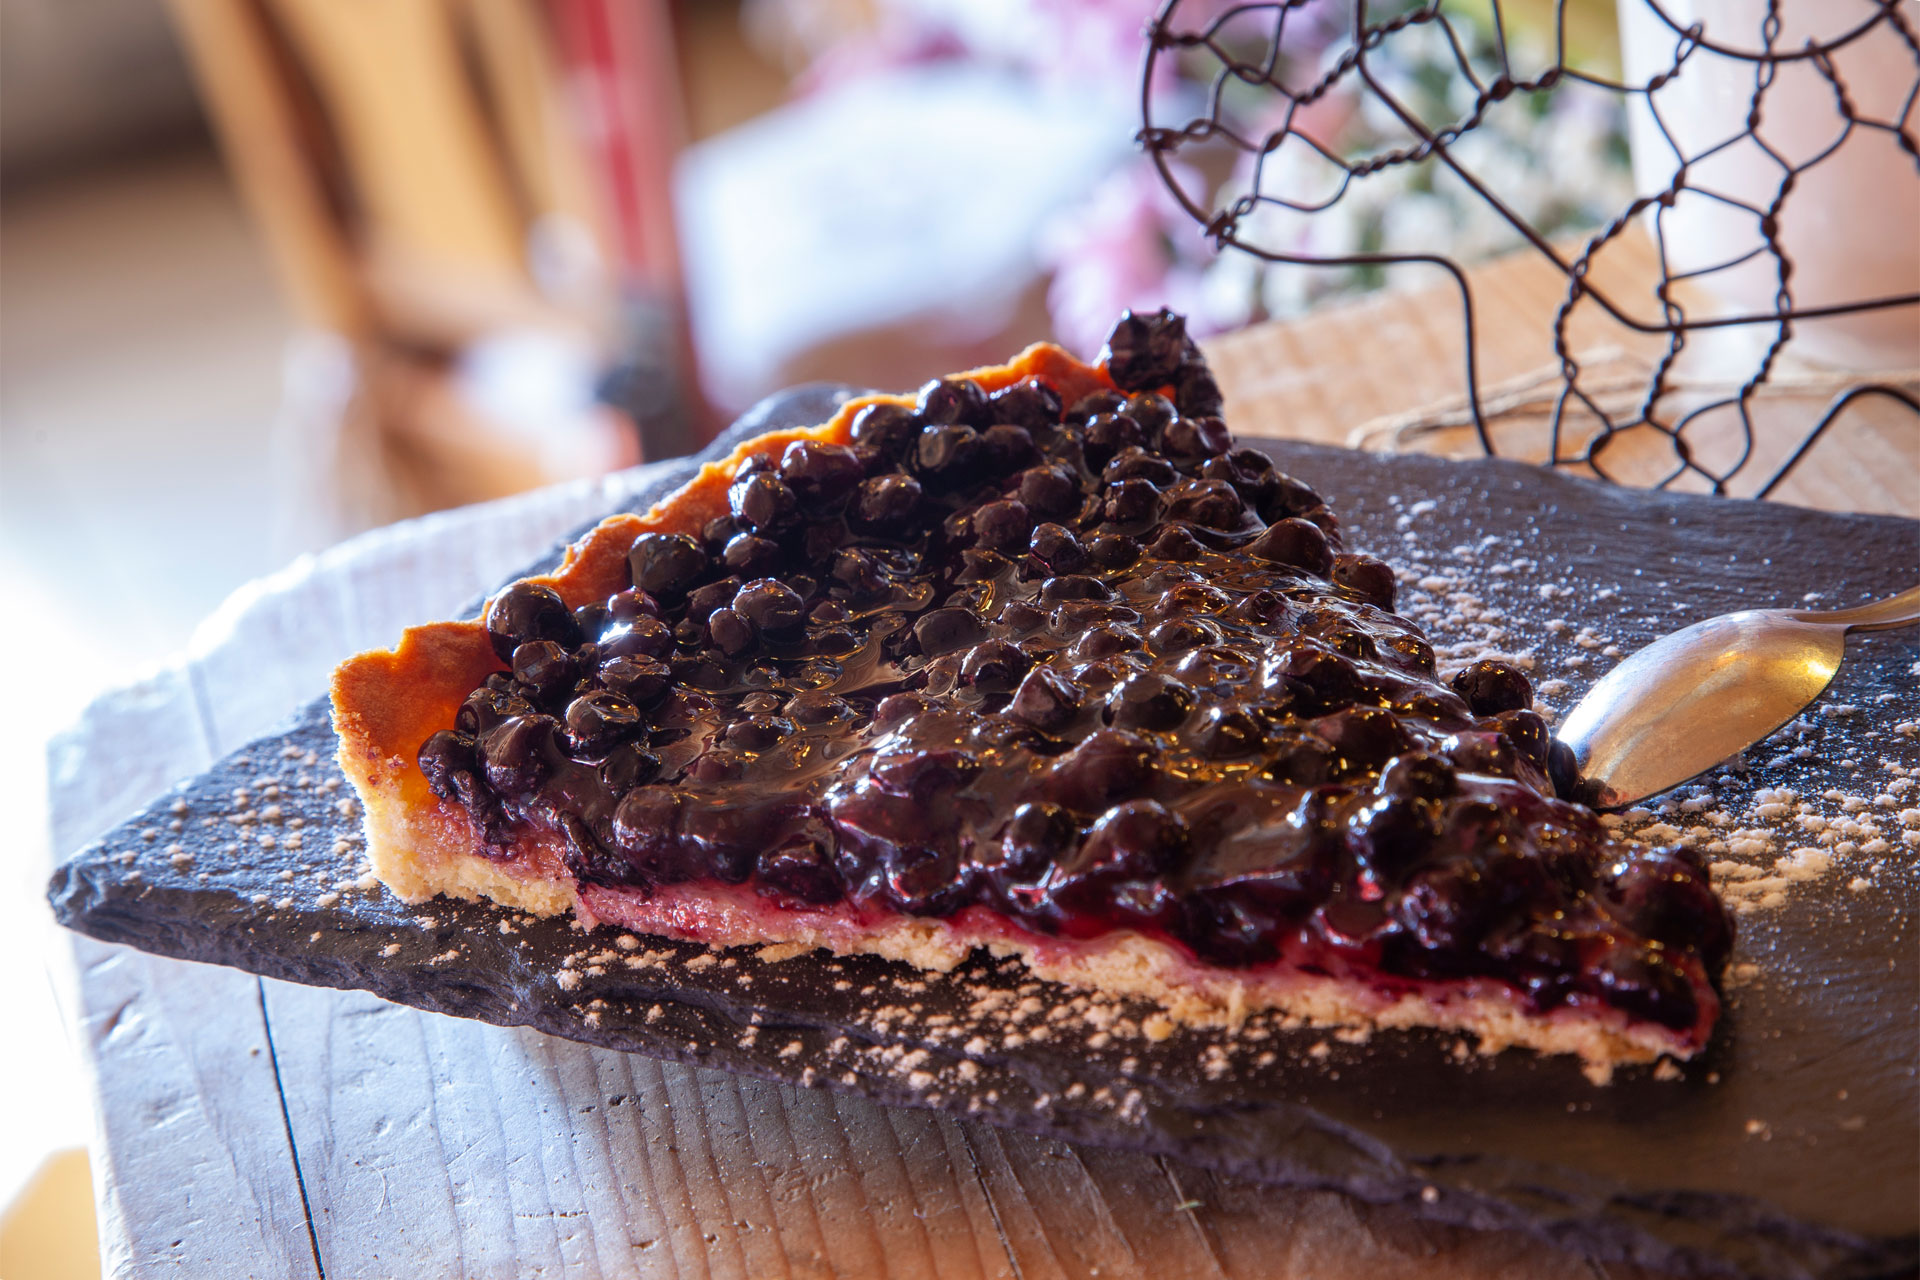 Chamrousse dessert mountain blueberry tart restaurant ski resort grenoble isere french alps france - © Ann David